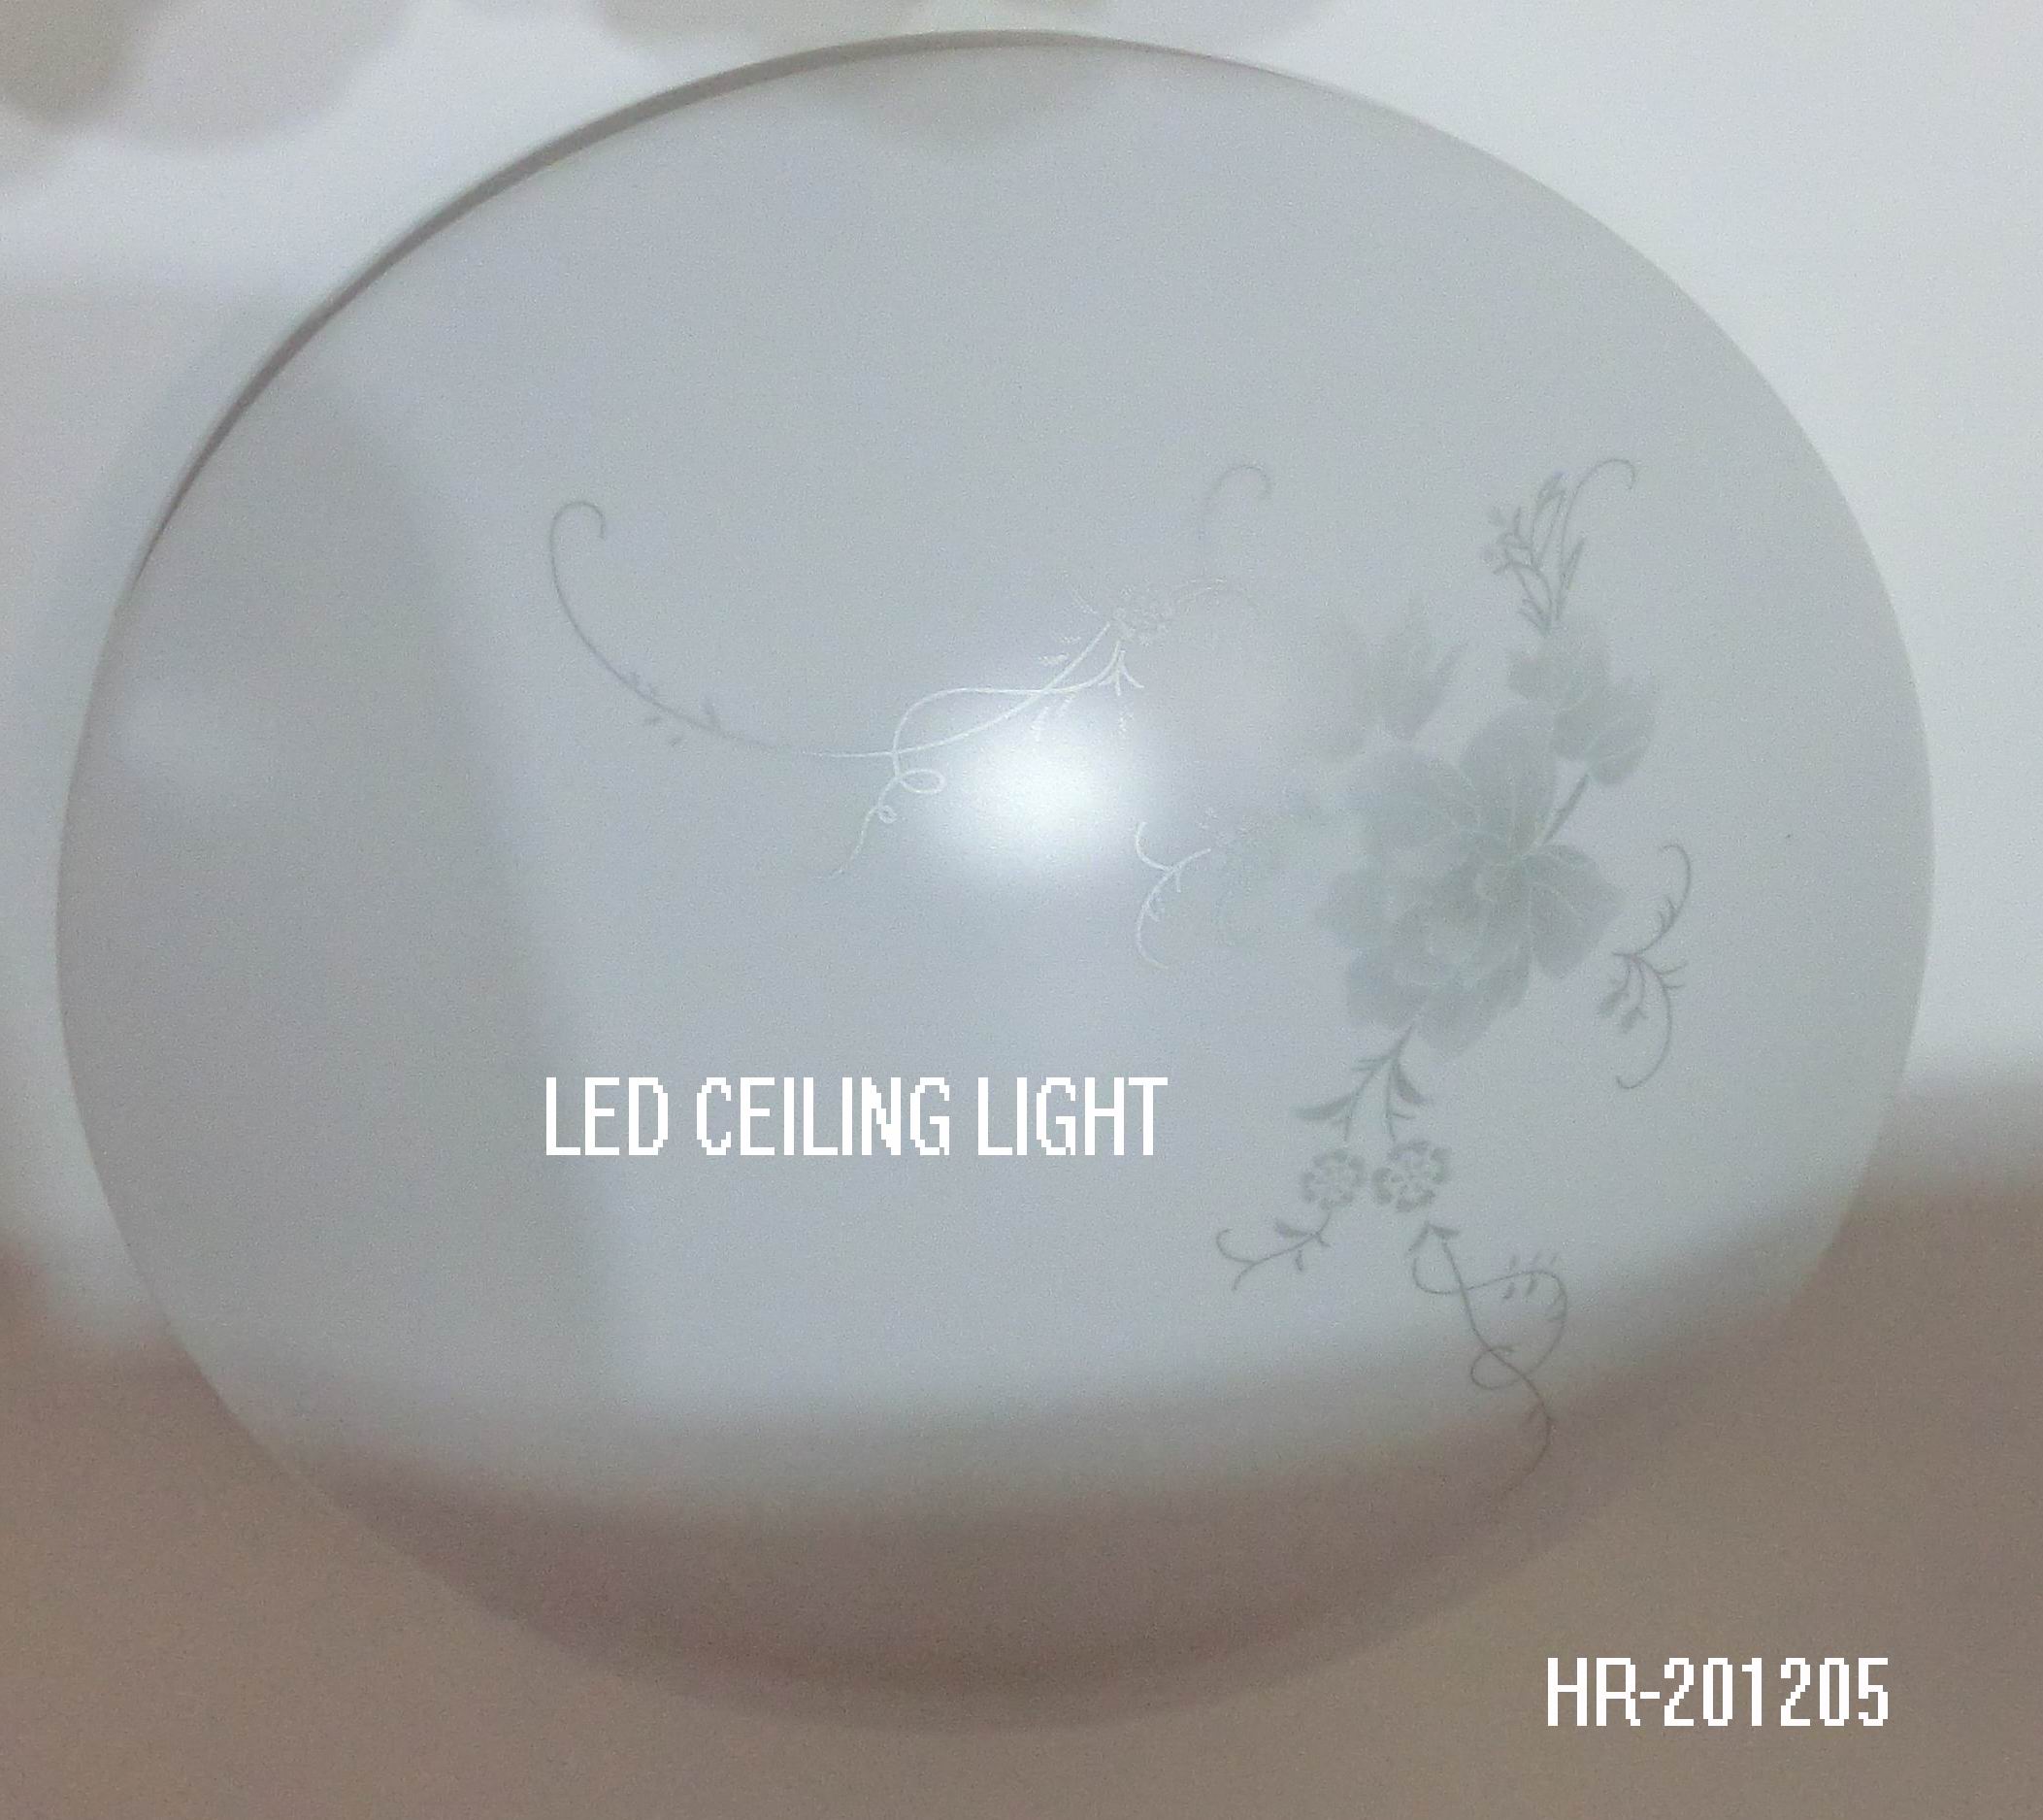 LED CEILING LIGHT HR-201205